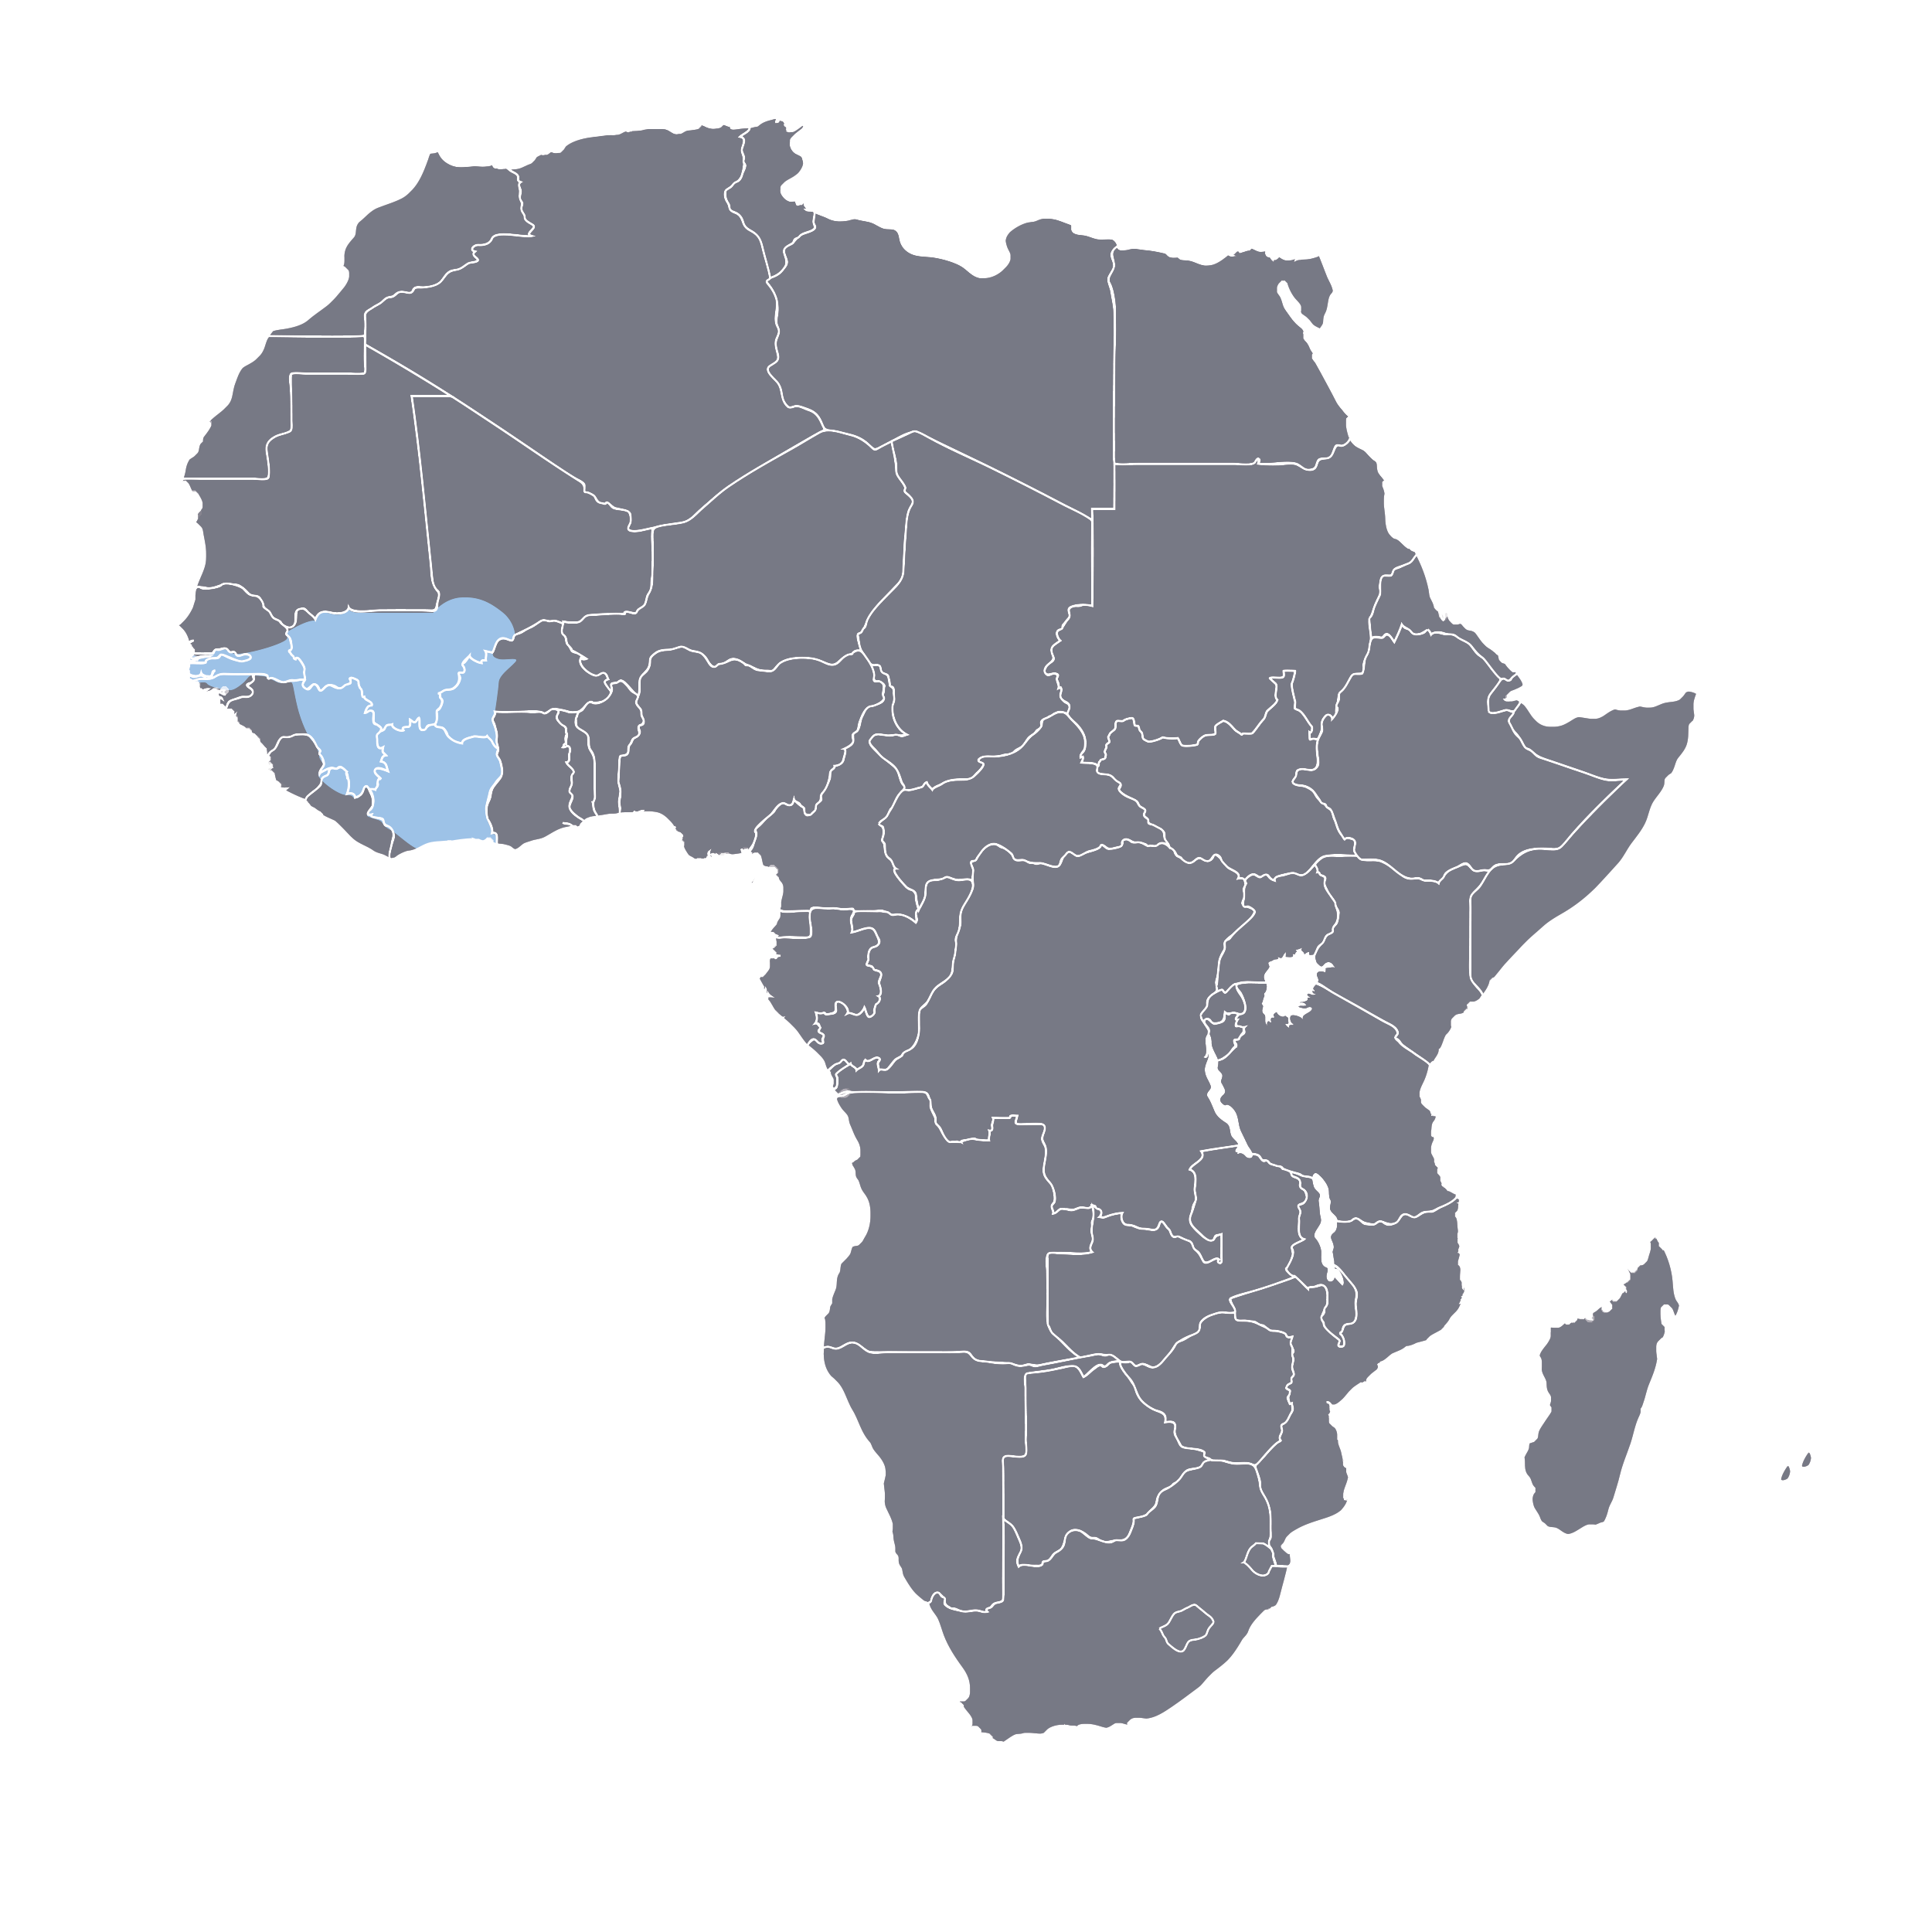 region where N’ko chararacter set is used